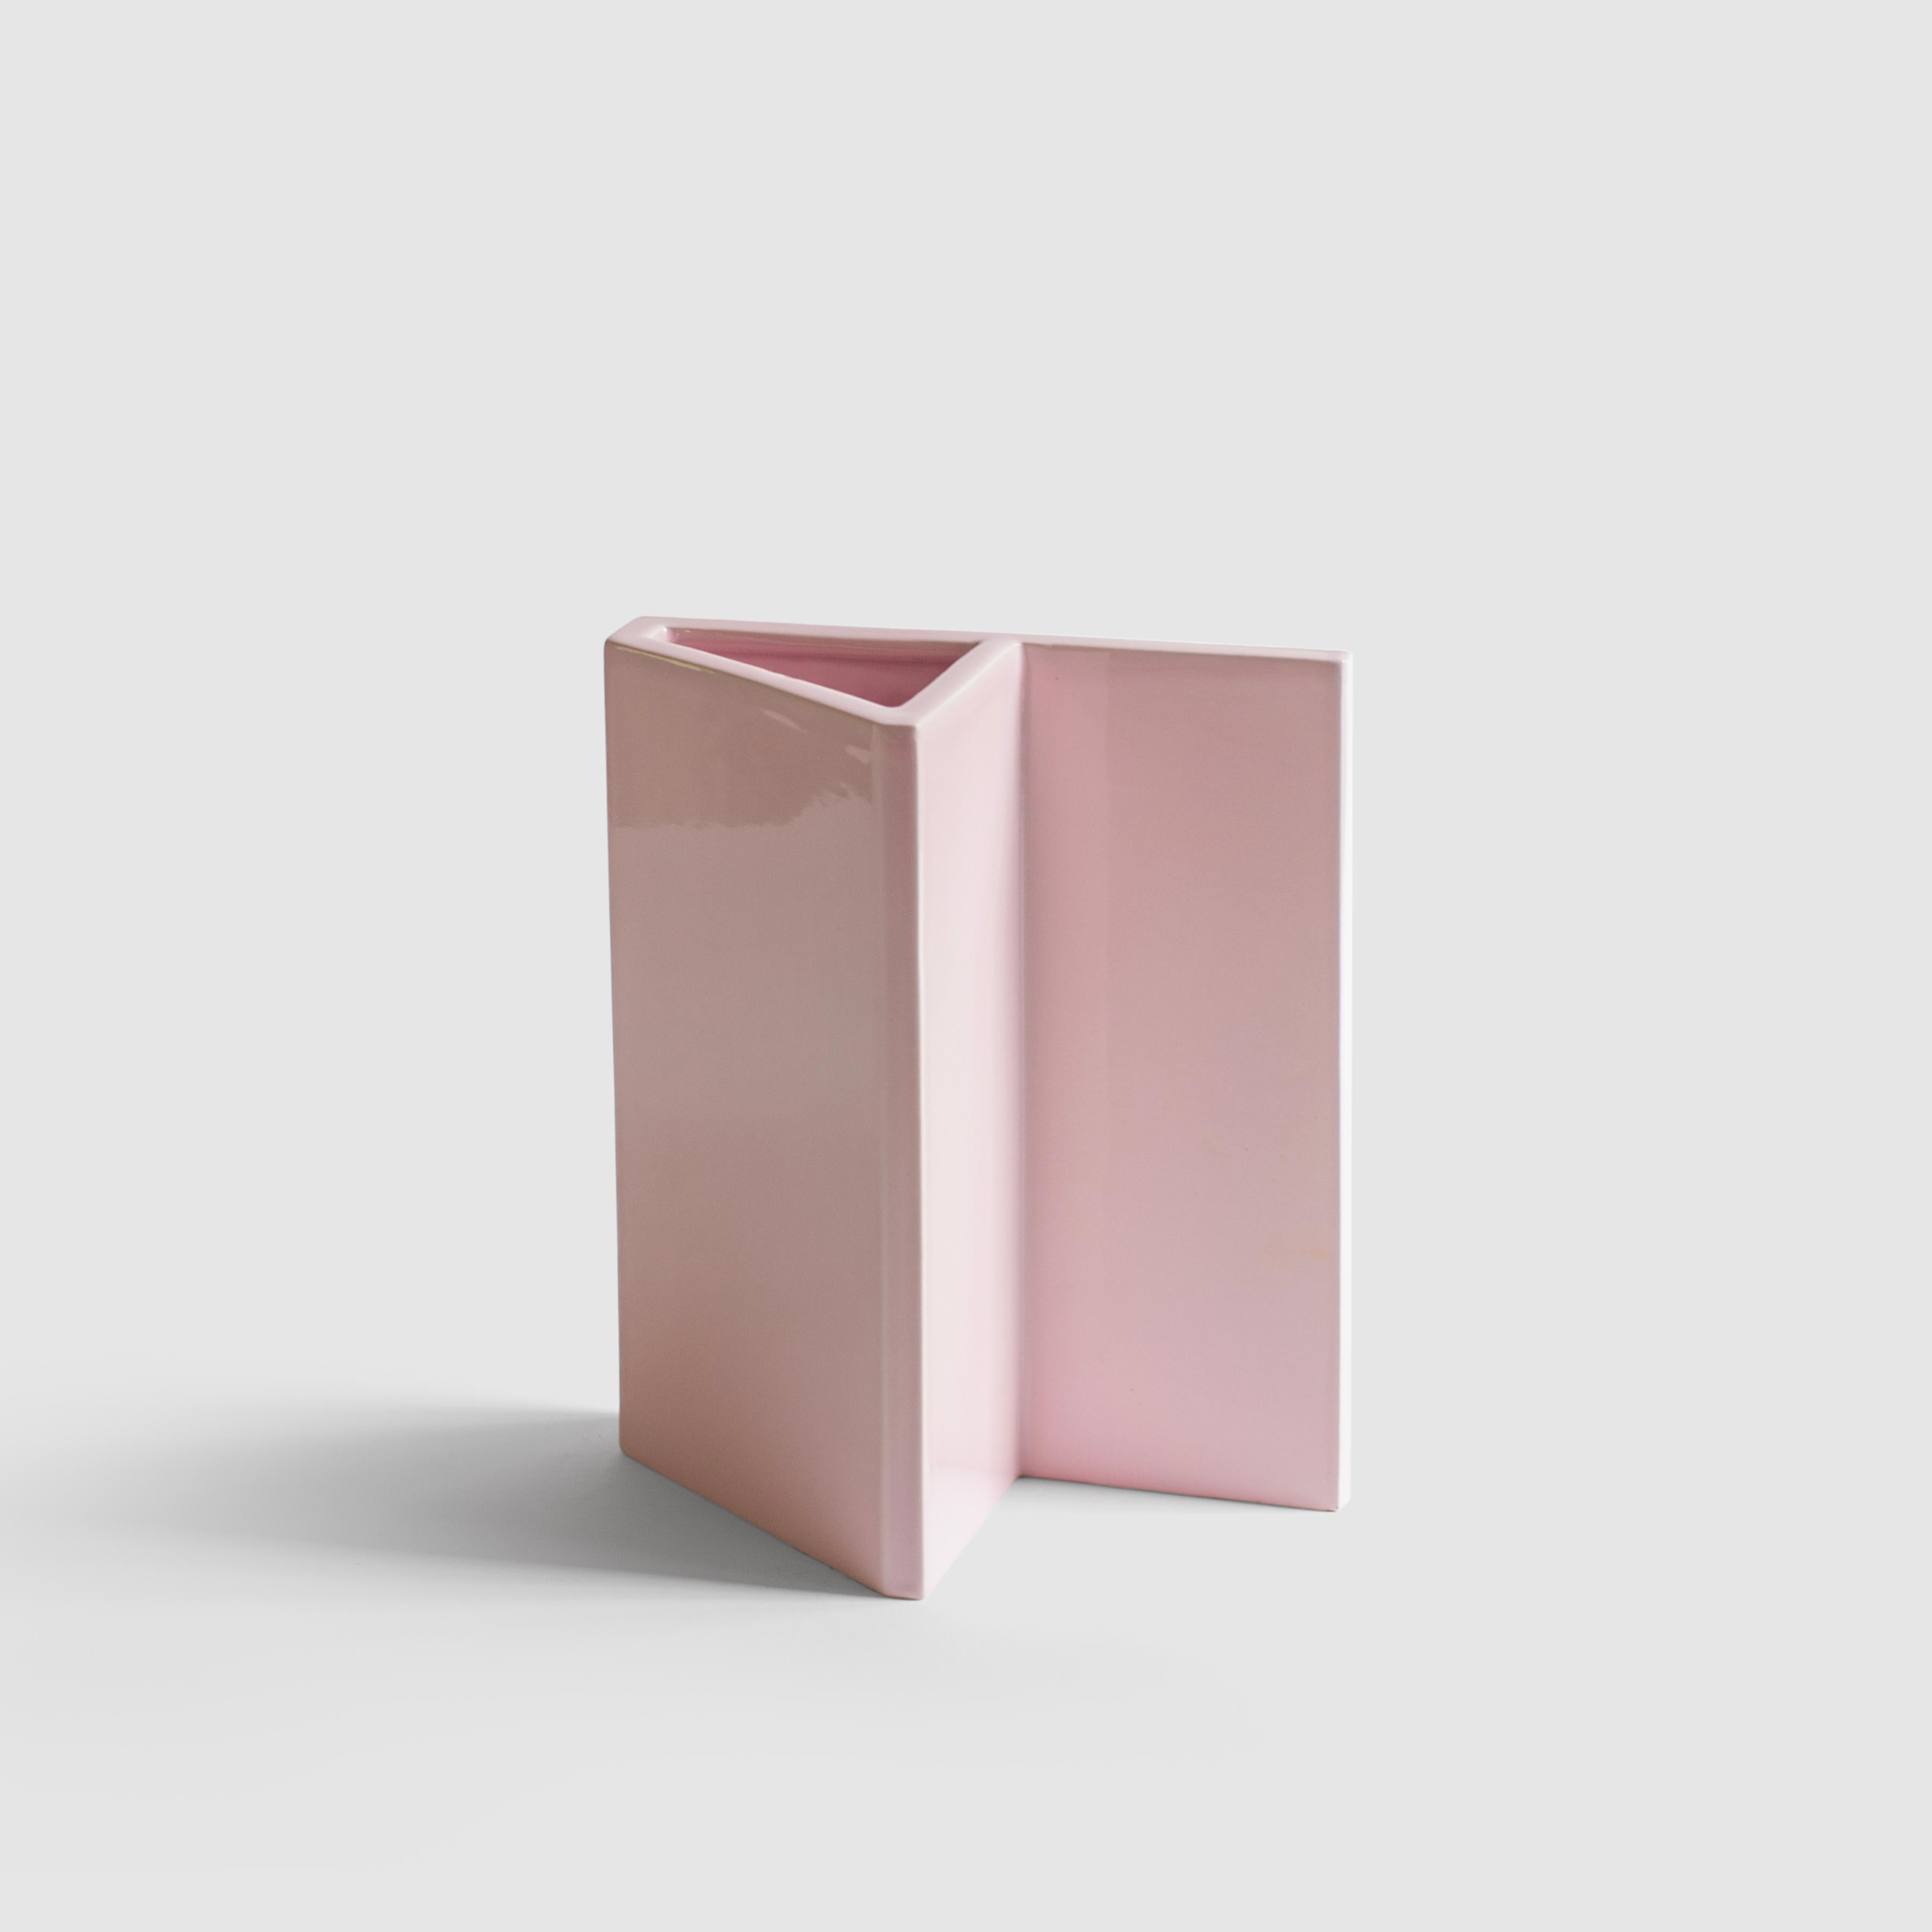 Die minimalistische und verspielte Vase aus gegossener Keramik mit rosa Glasur wird in Mailand handgefertigt.
Als Teil der von der Künstlerin Sara Khamisi entworfenen Kollektion 